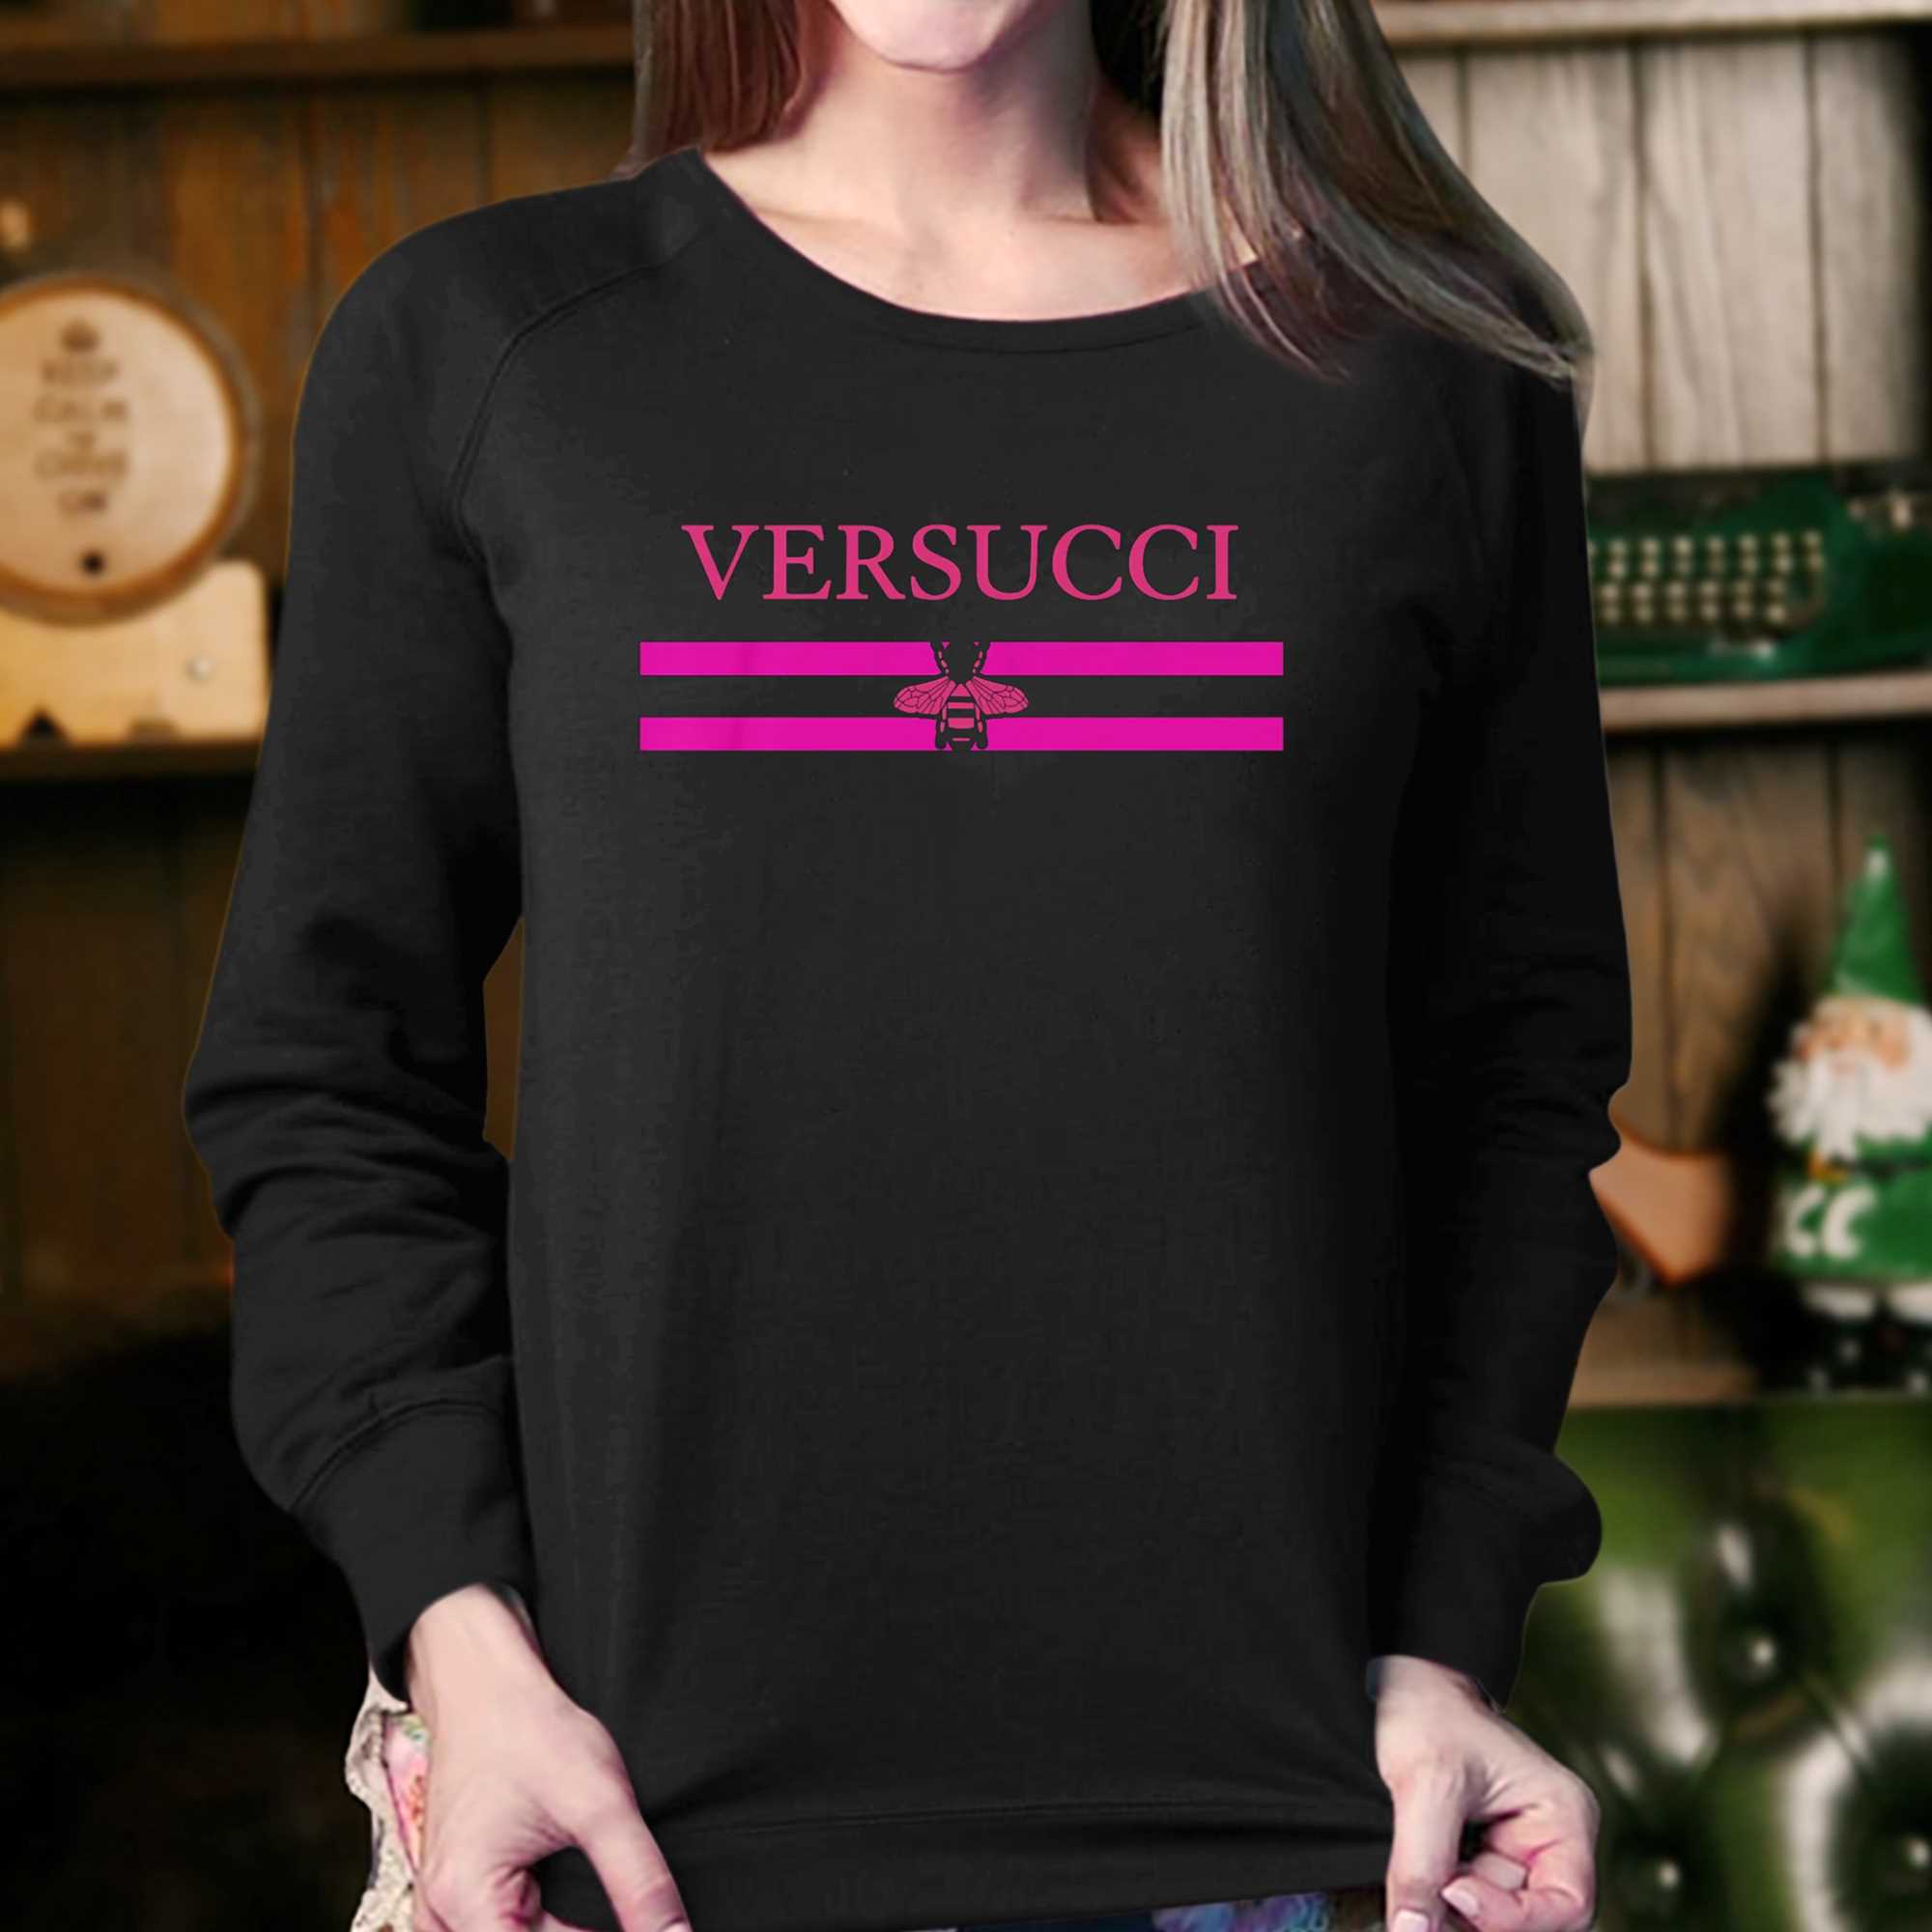 Versucci T-shirt 